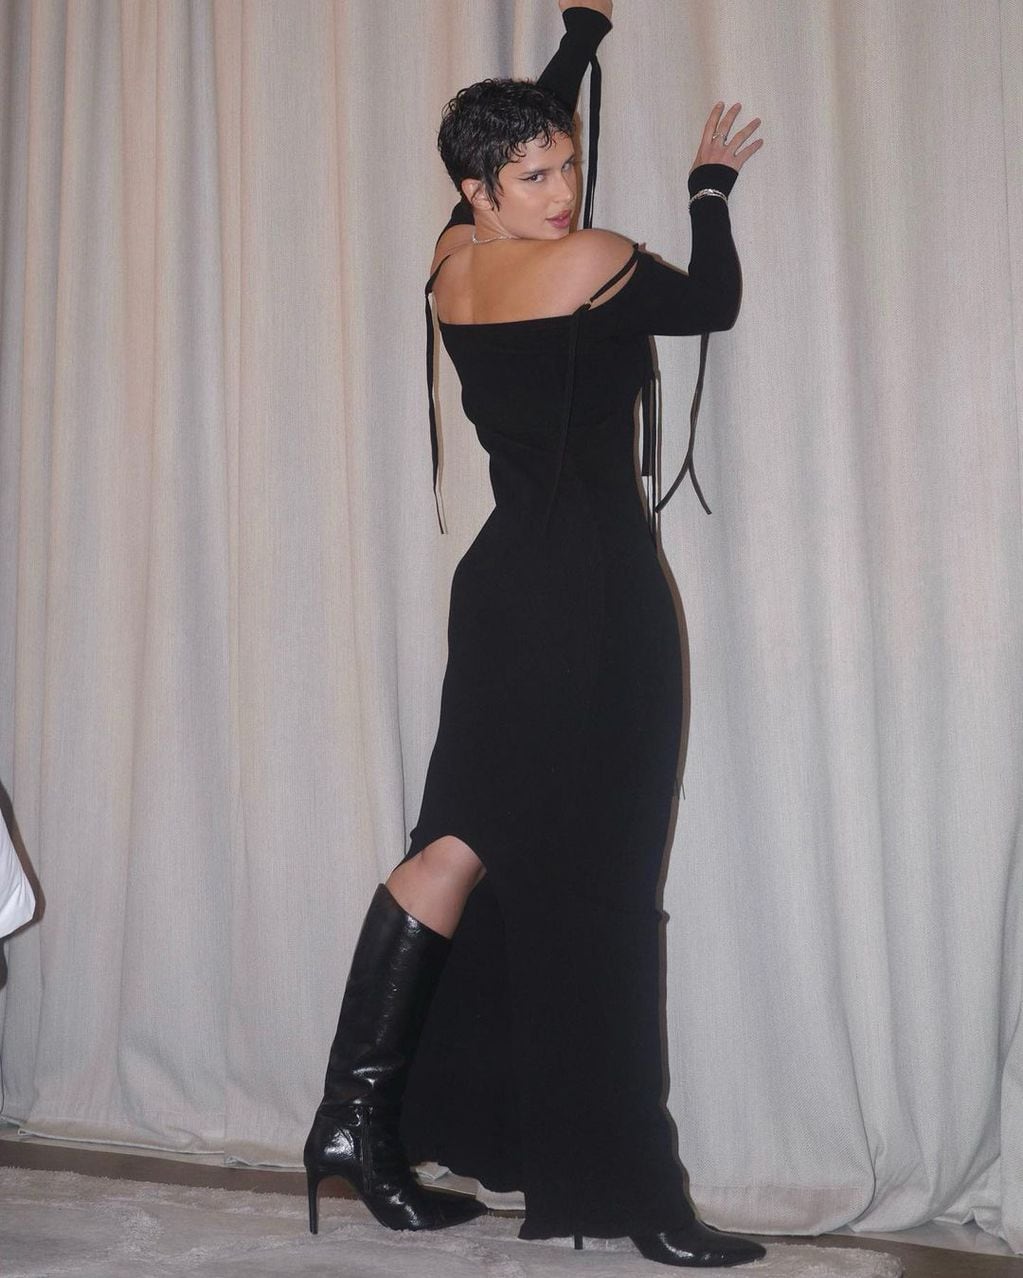 Nathy Peluso arrasó en Instagram con un vestido al cuerpo total black.